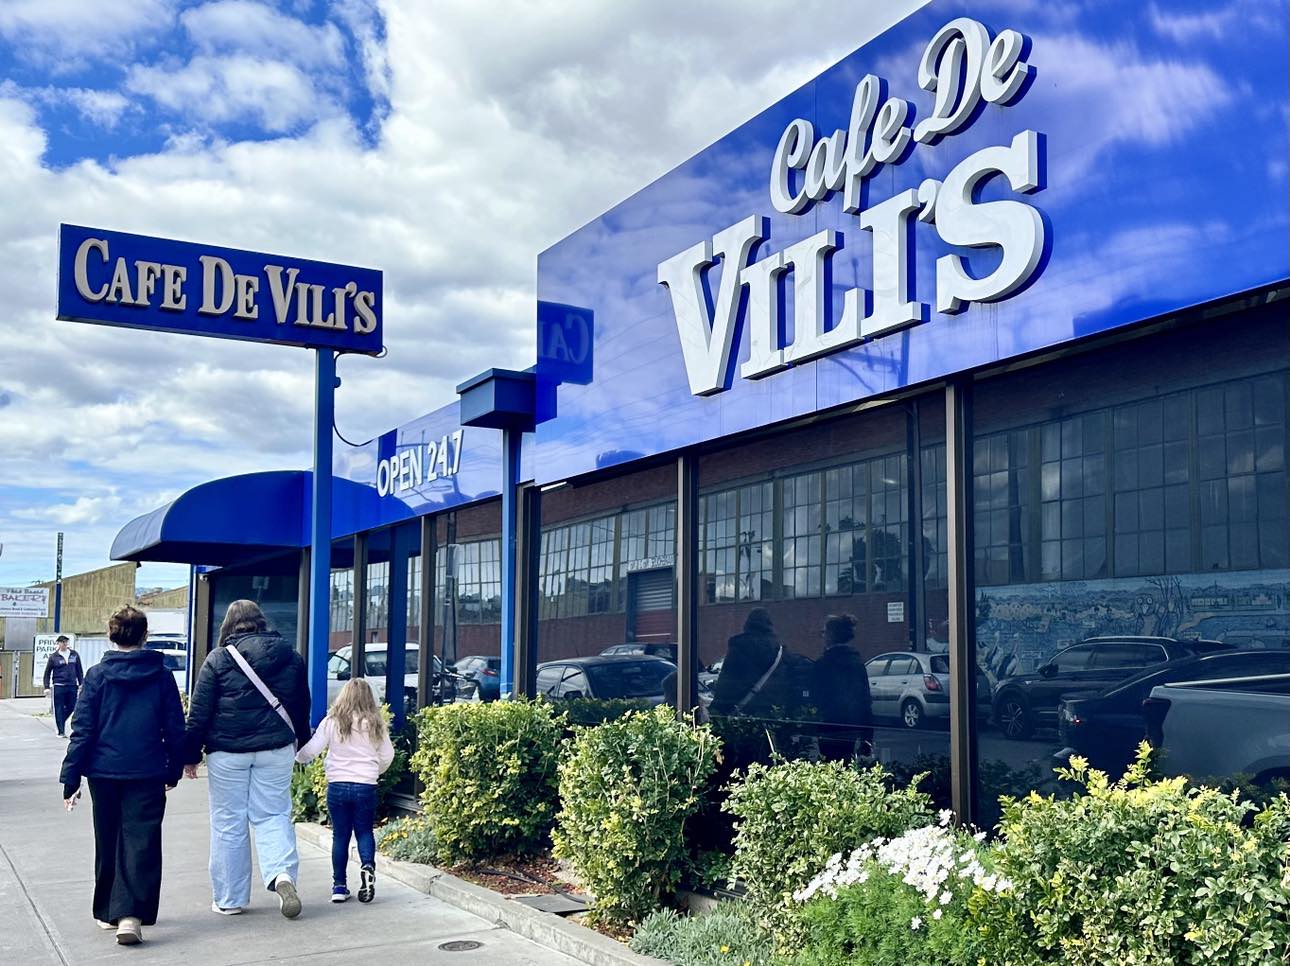 Café de Vili’s